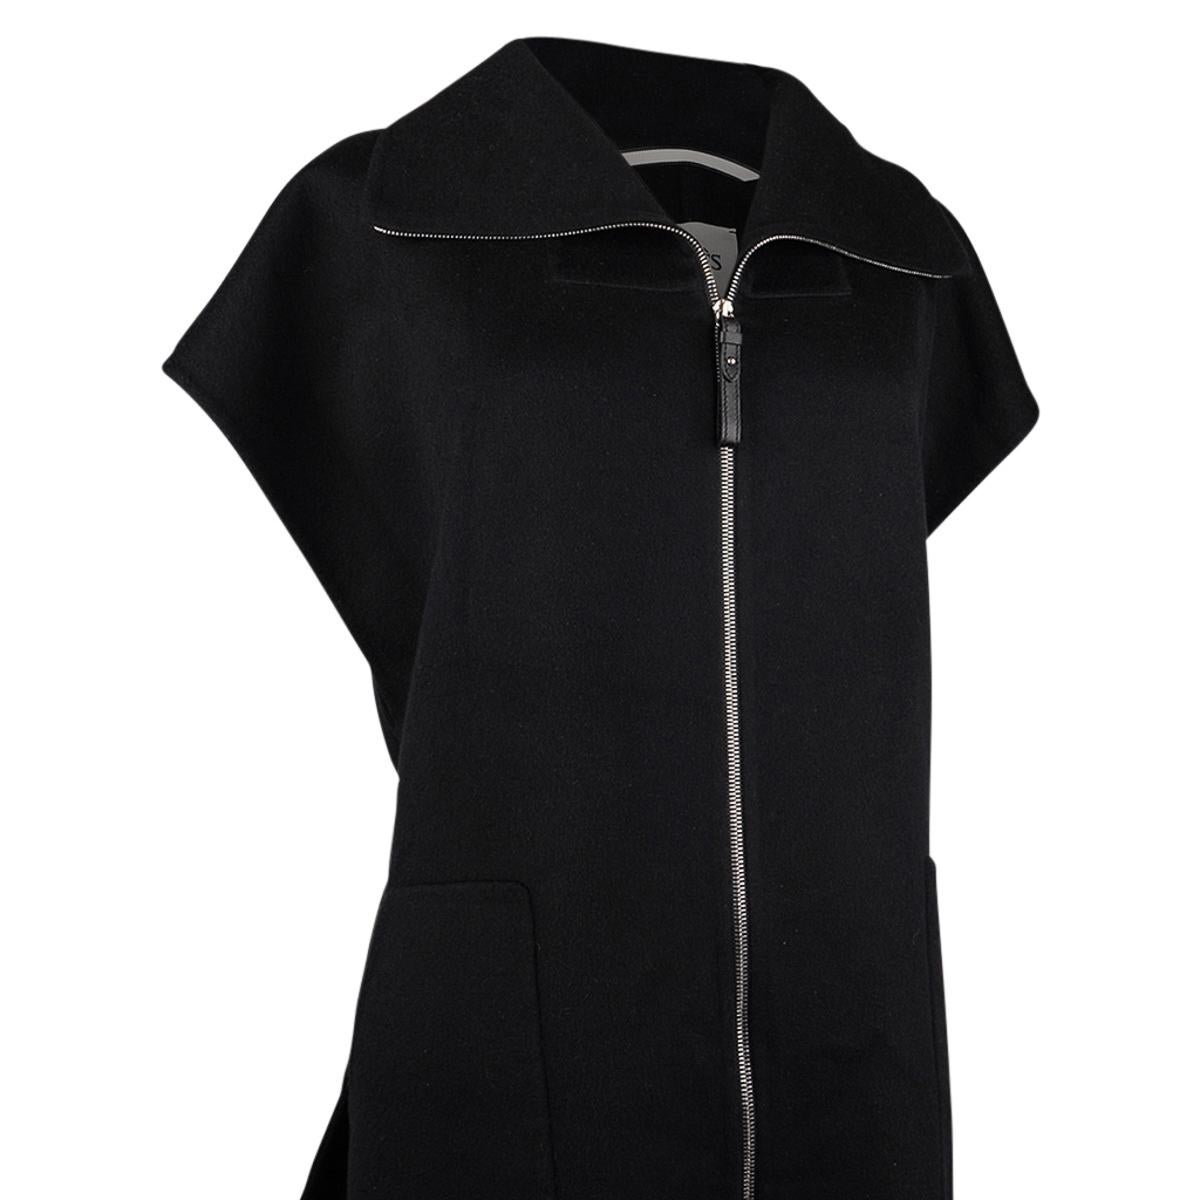 Hermes Short Vest Black Zip Double Face Cashmere 38 / 6 For Sale 6